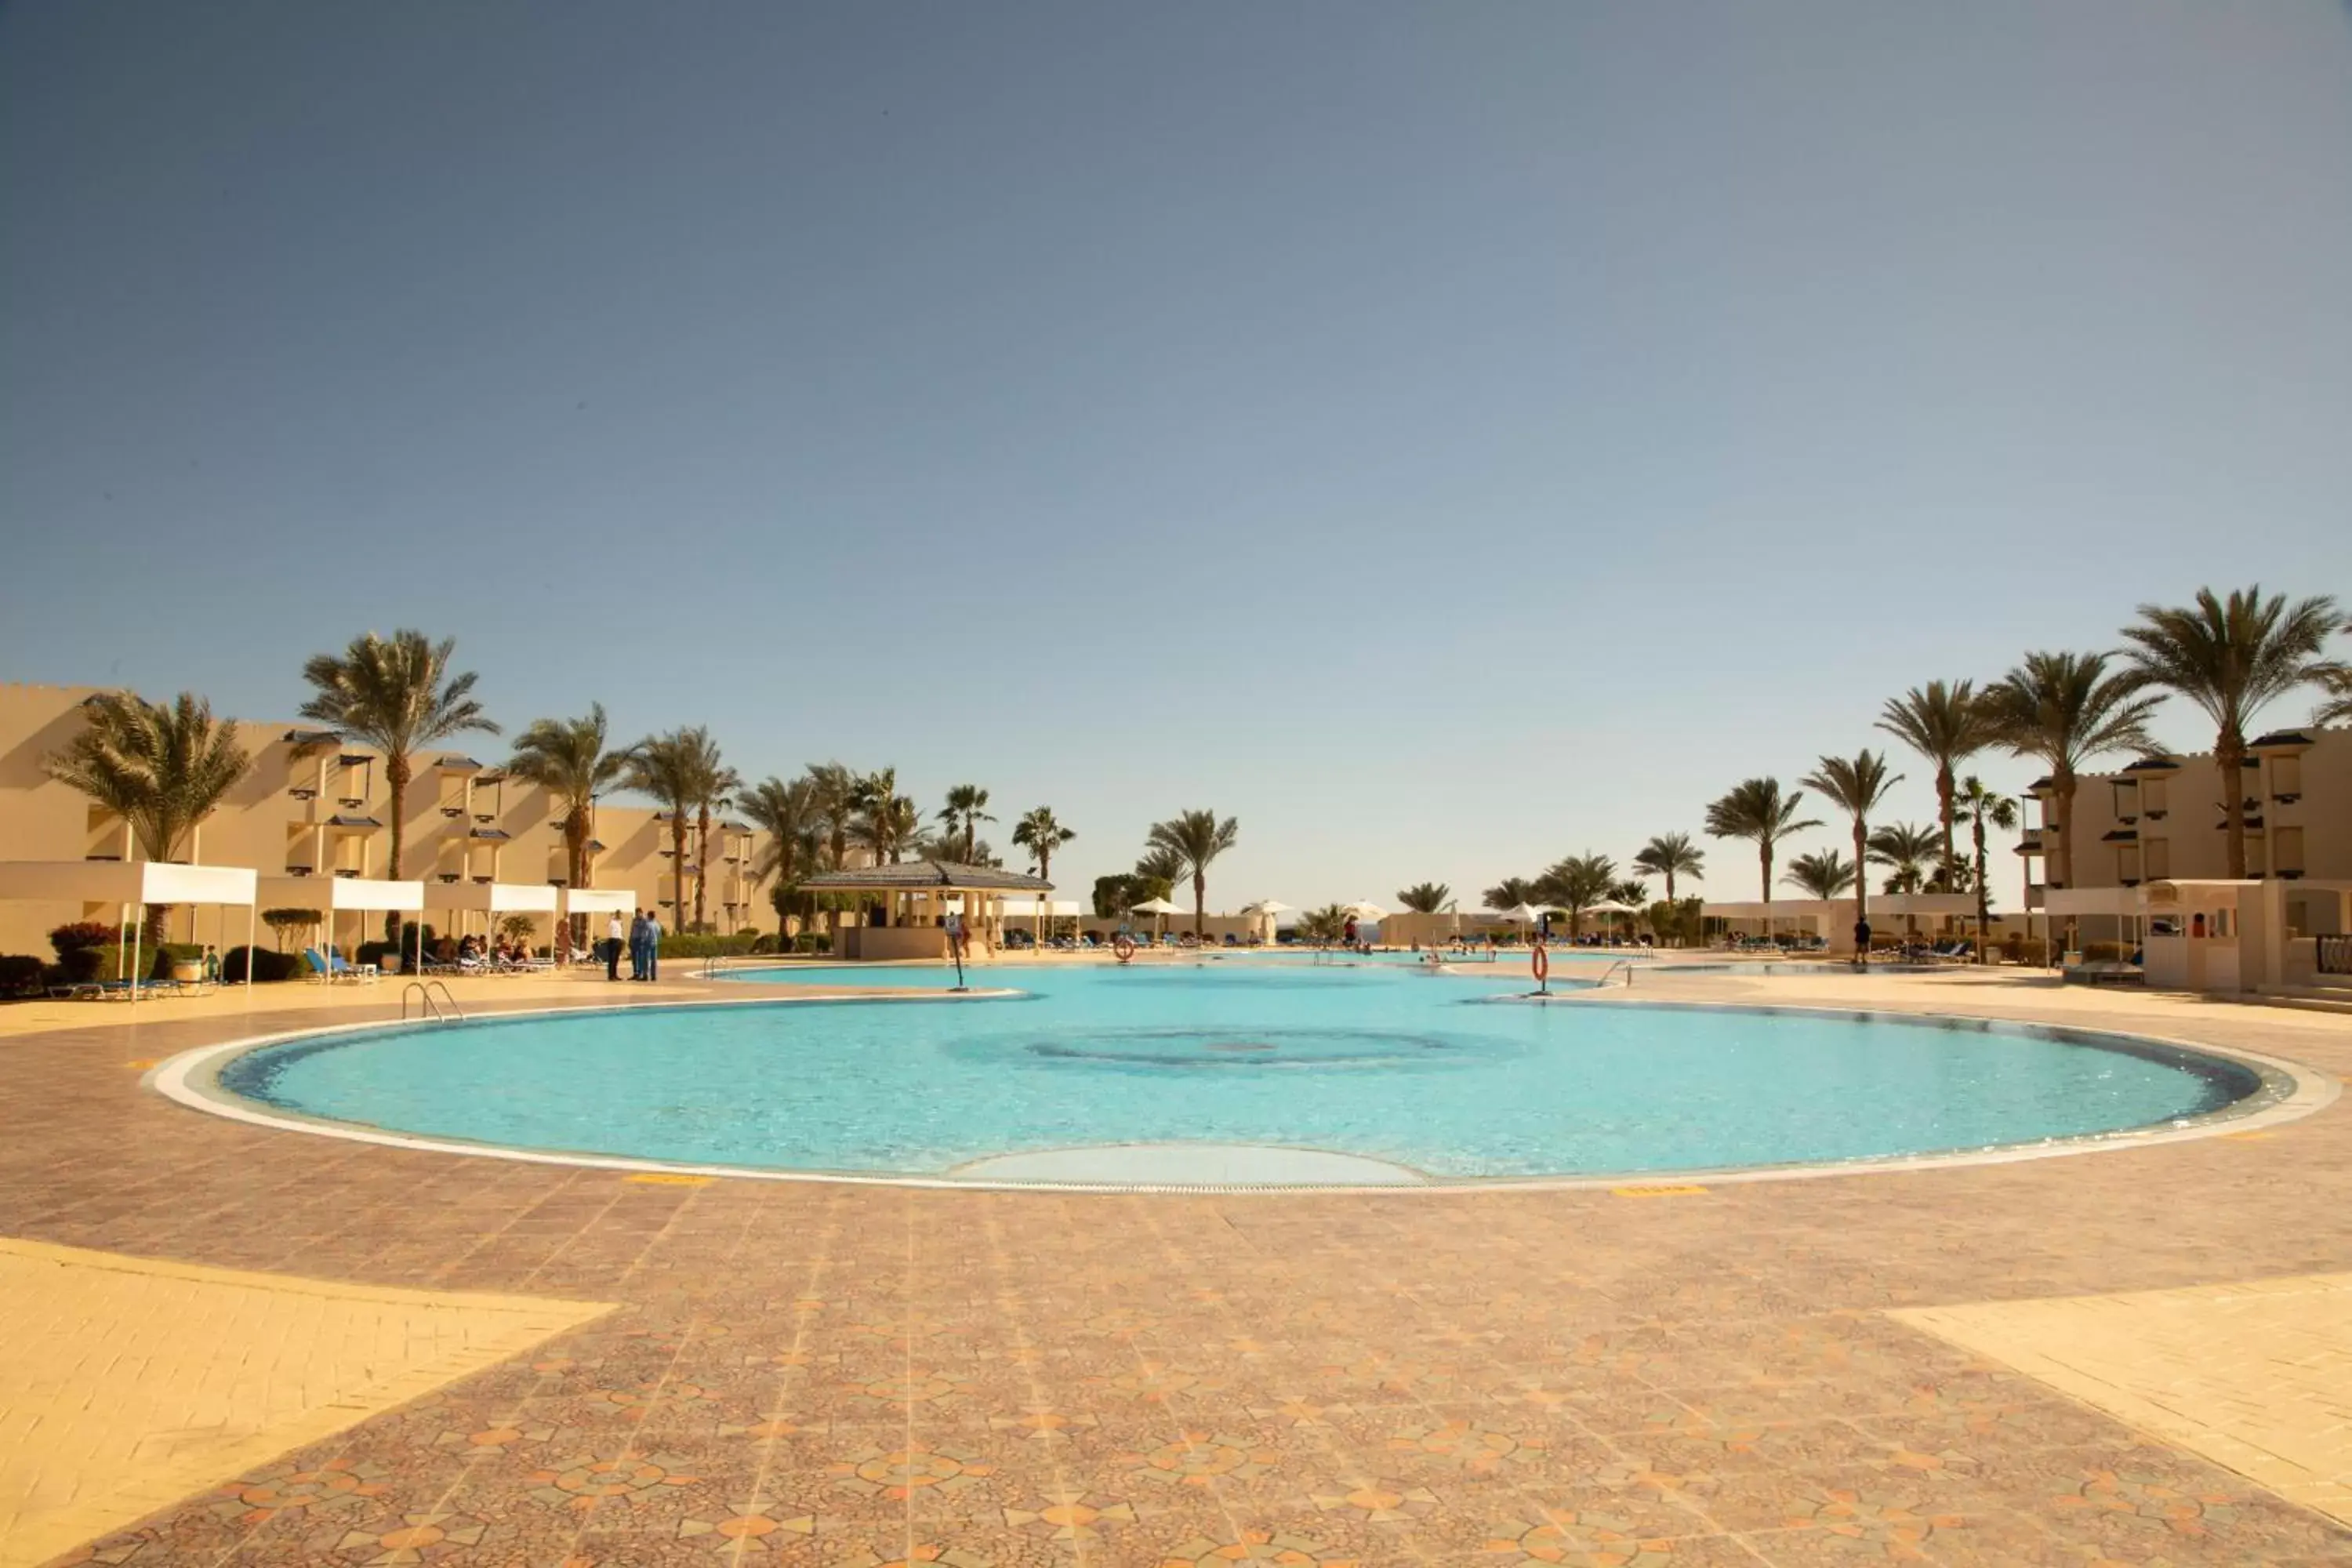 Swimming Pool in Grand Oasis Resort